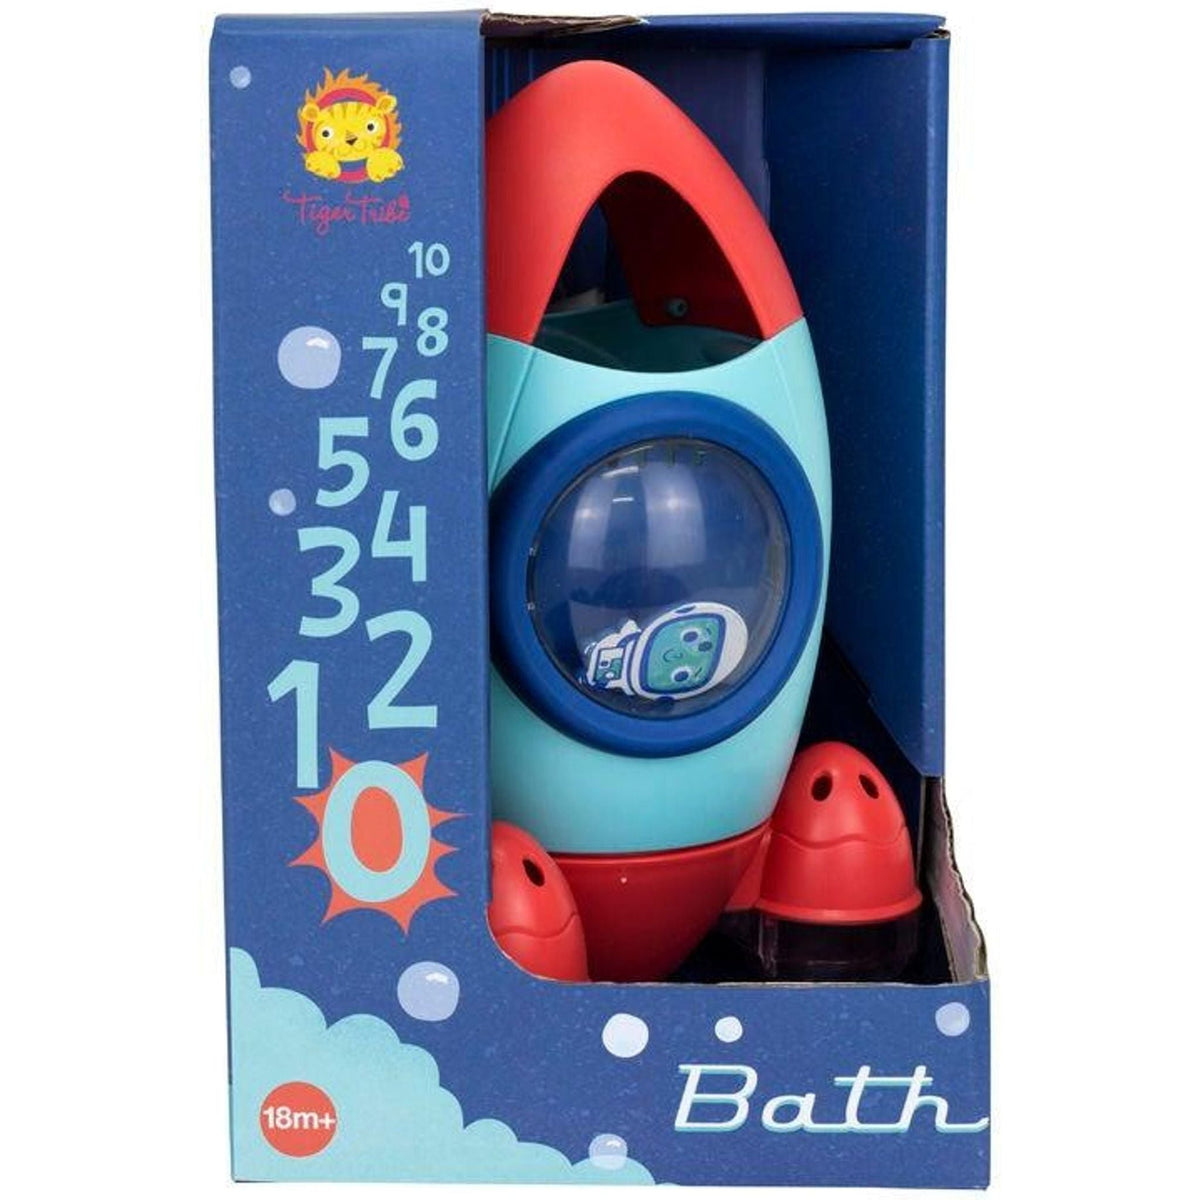 Bath Rocket - Toybox Tales